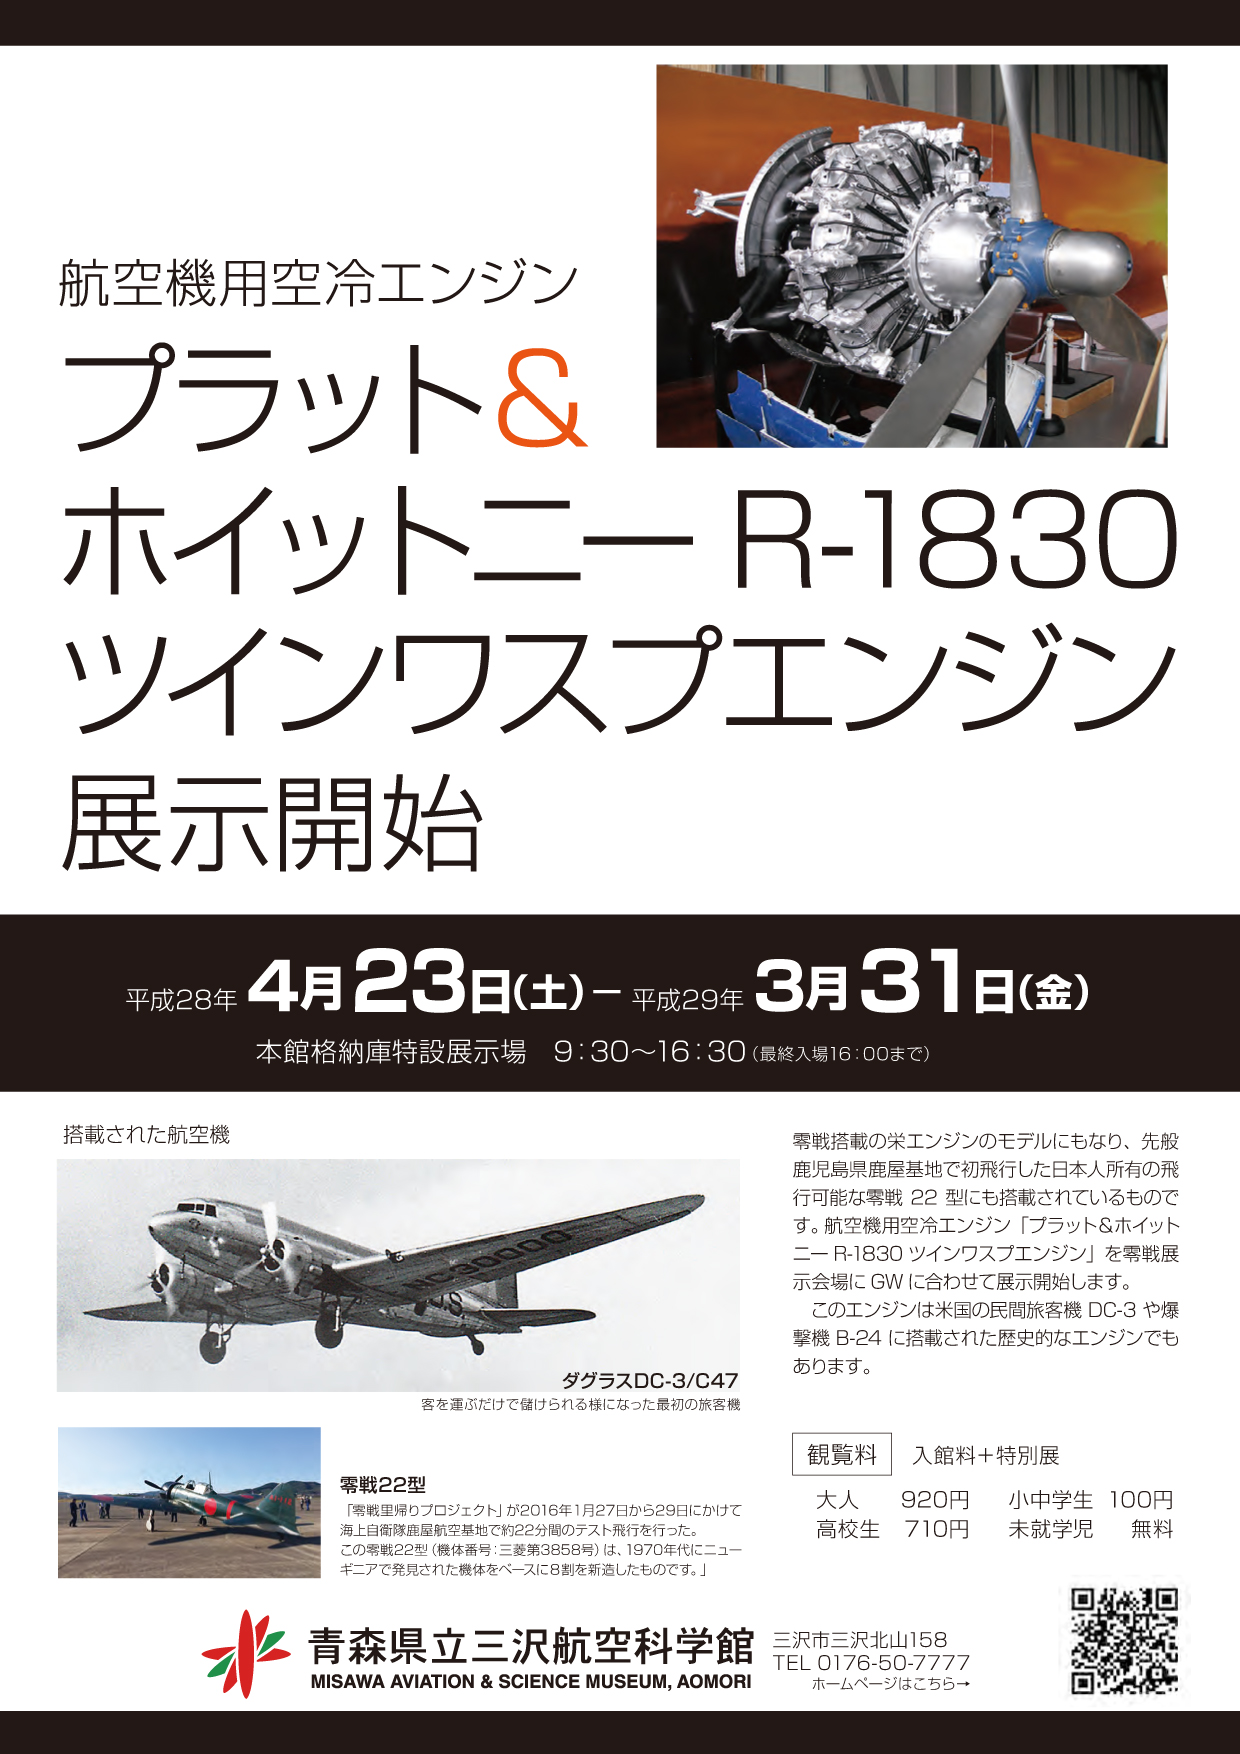 三沢タイムズ航空機用空冷エンジン「プラット＆ホイットニー R-1830 ツインワスプエンジン」を展示開始